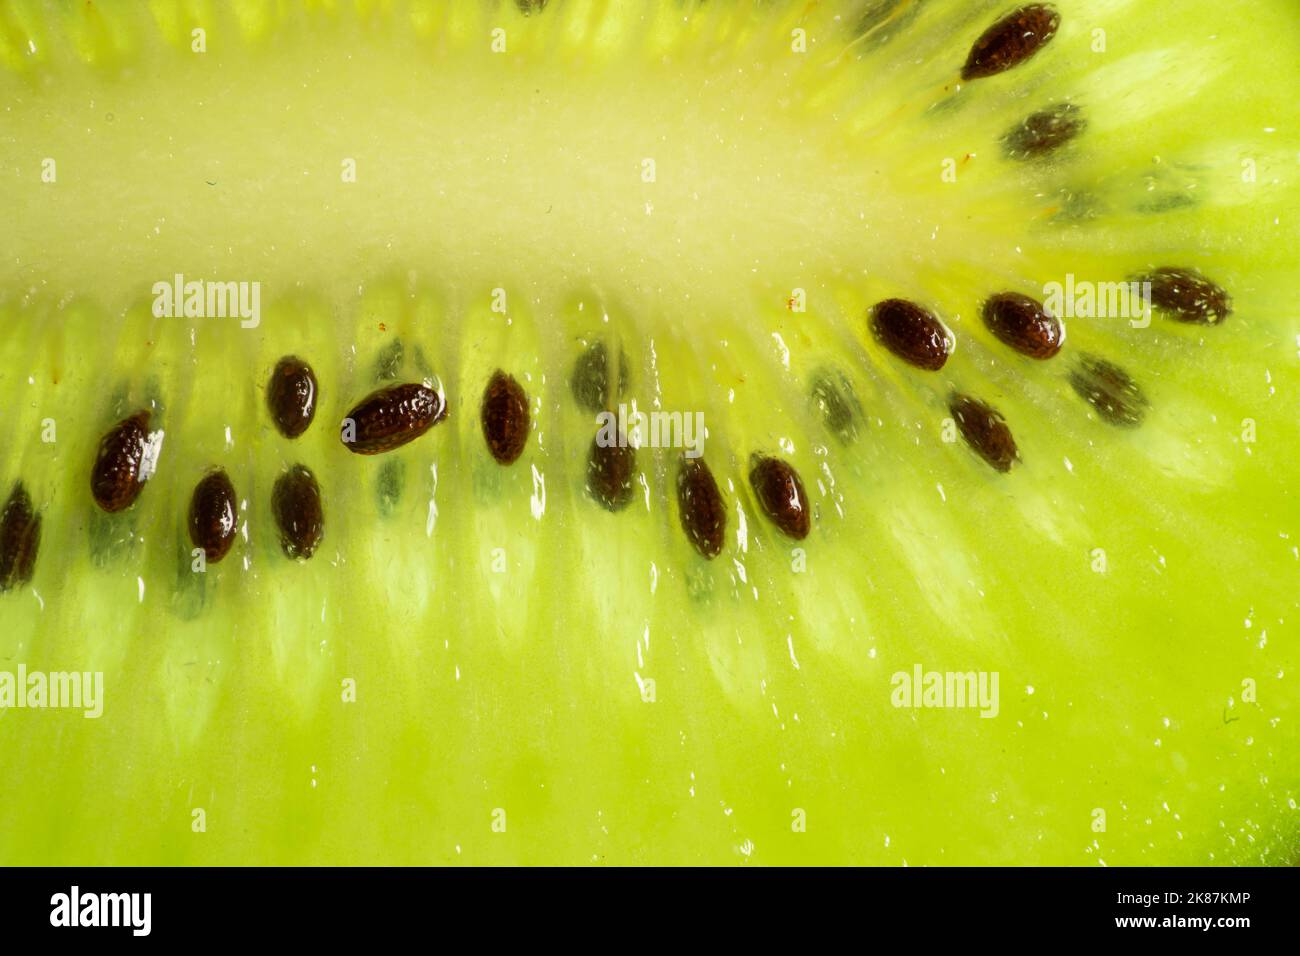 Slice of fresh juicy kiwi fruit with seeds close up, macro background.  Stock Photo